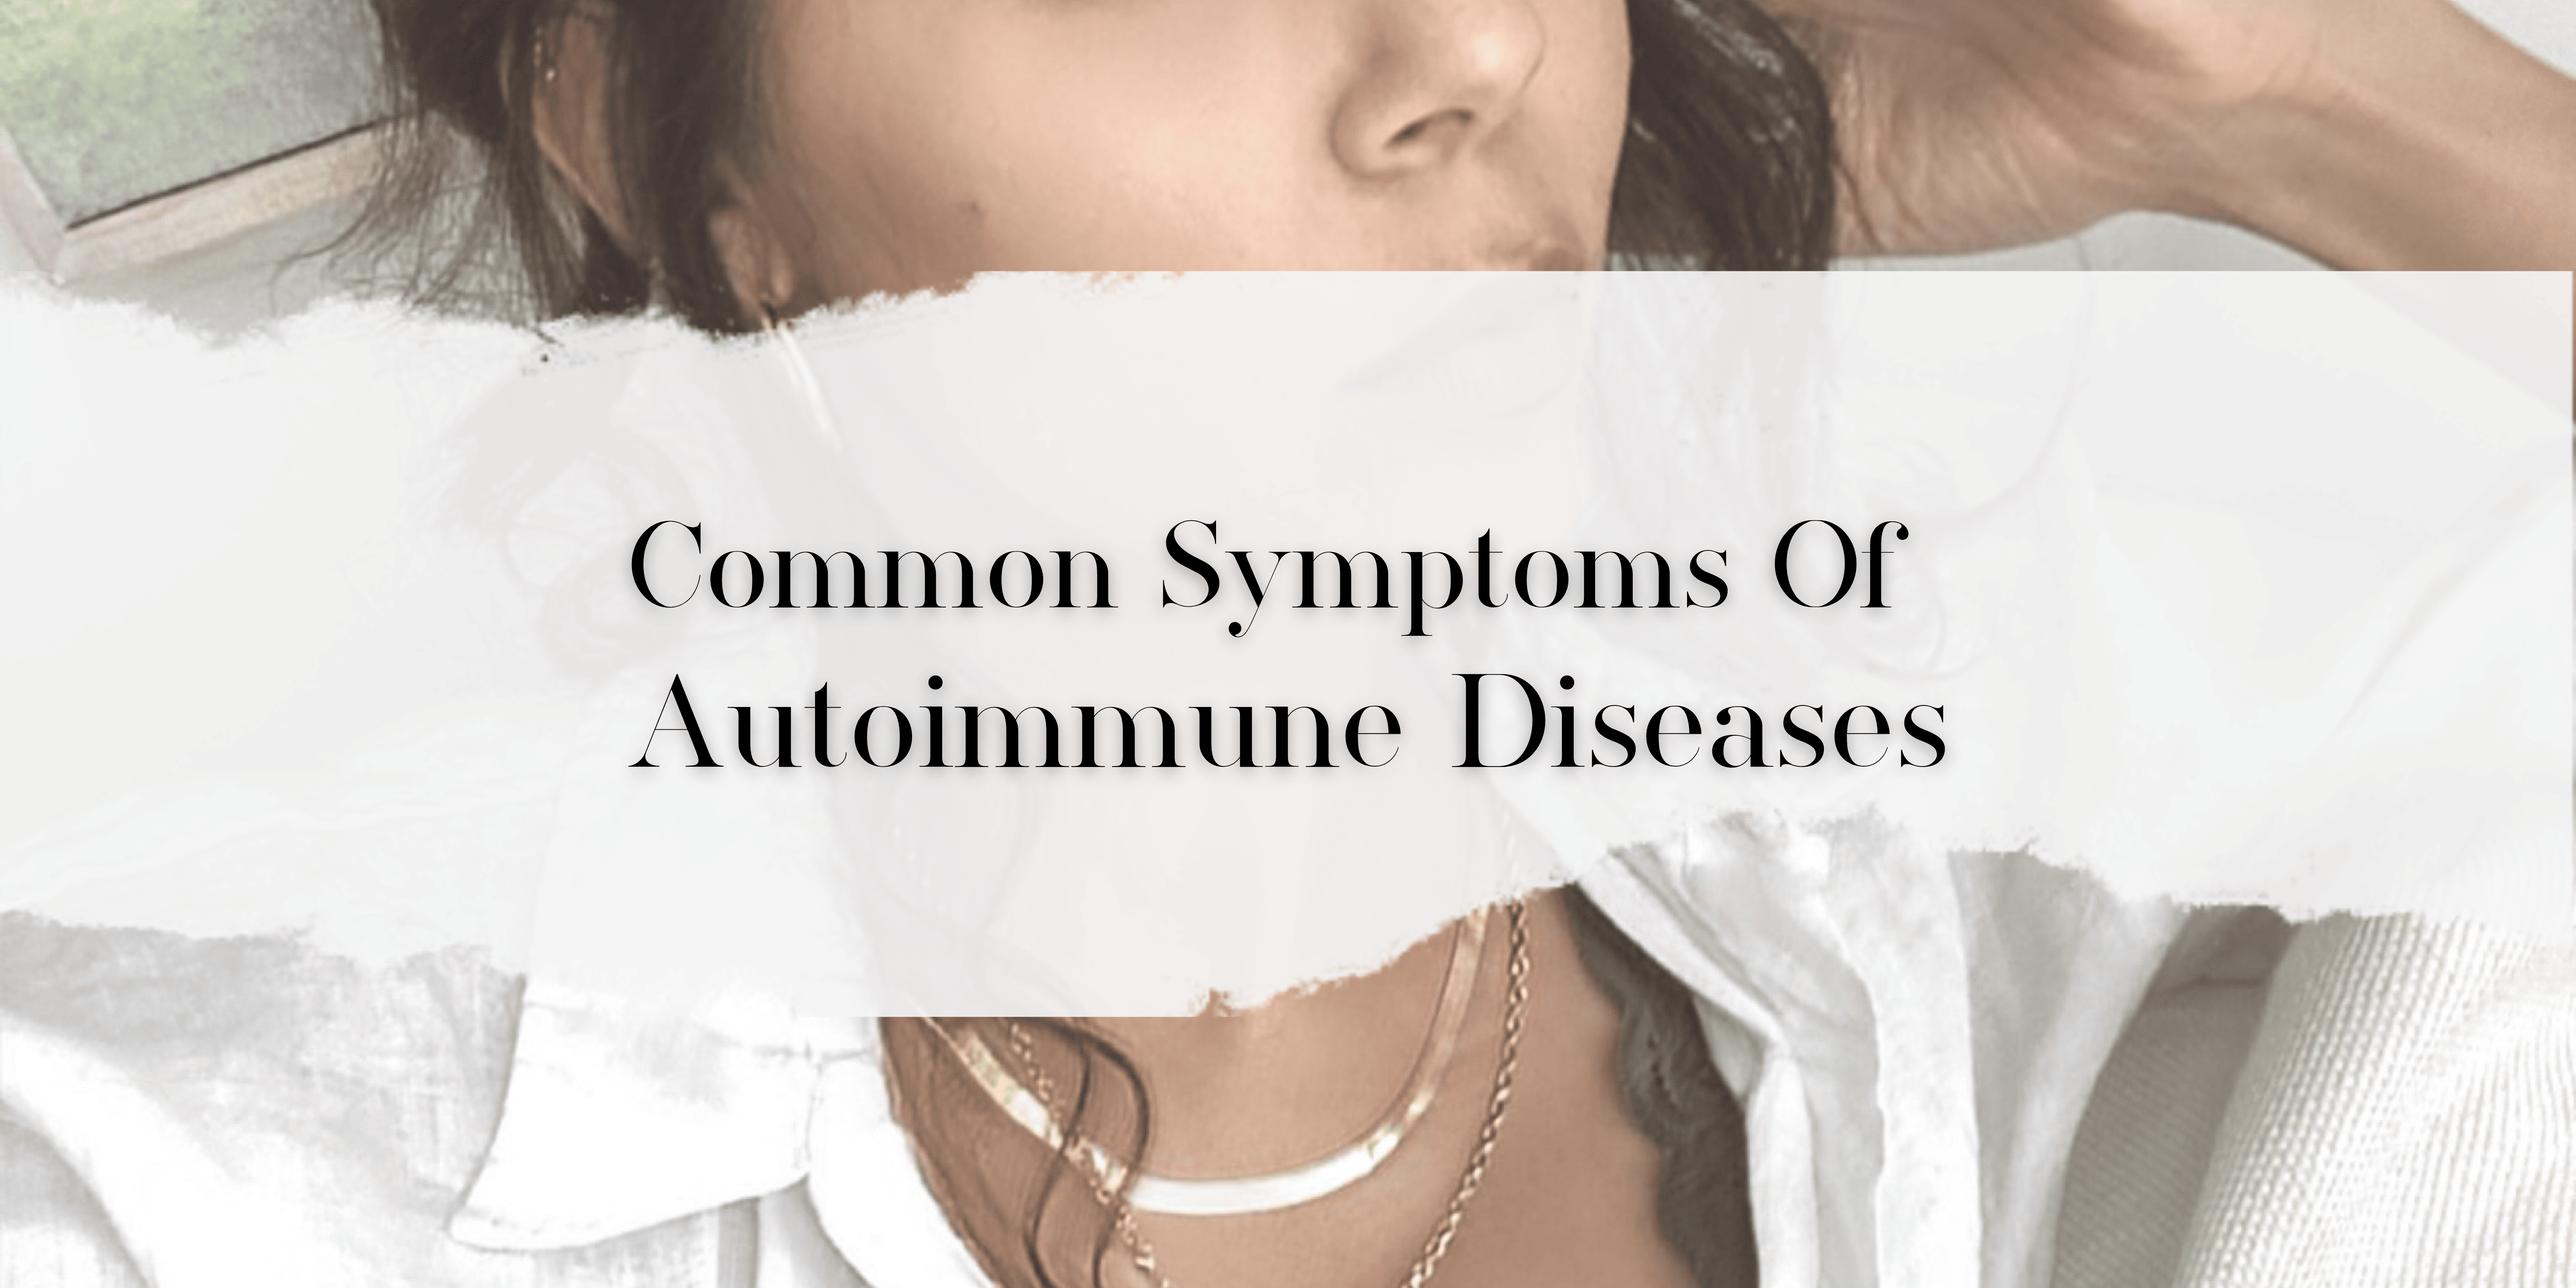 Common Symptoms Of Autoimmune Diseases